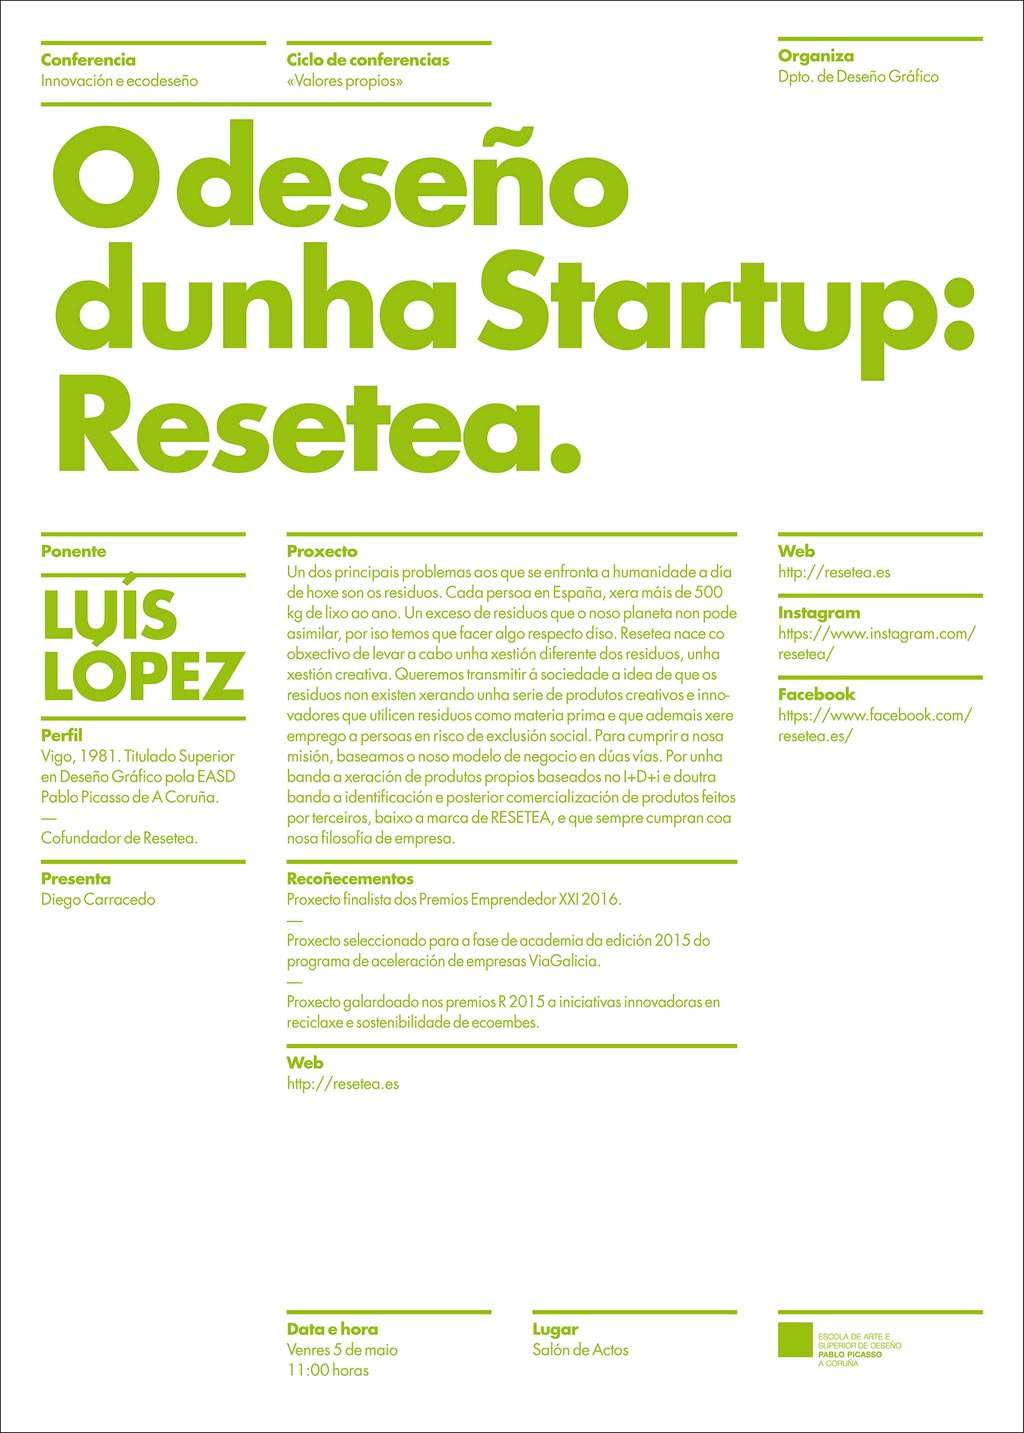 Conferencia sobre deseño dunha Startup impartida polo ex-alumno e Titulado Superior na EASD Pablo Picasso, Luís López. Venres 5 de maio ás 11:00 horas